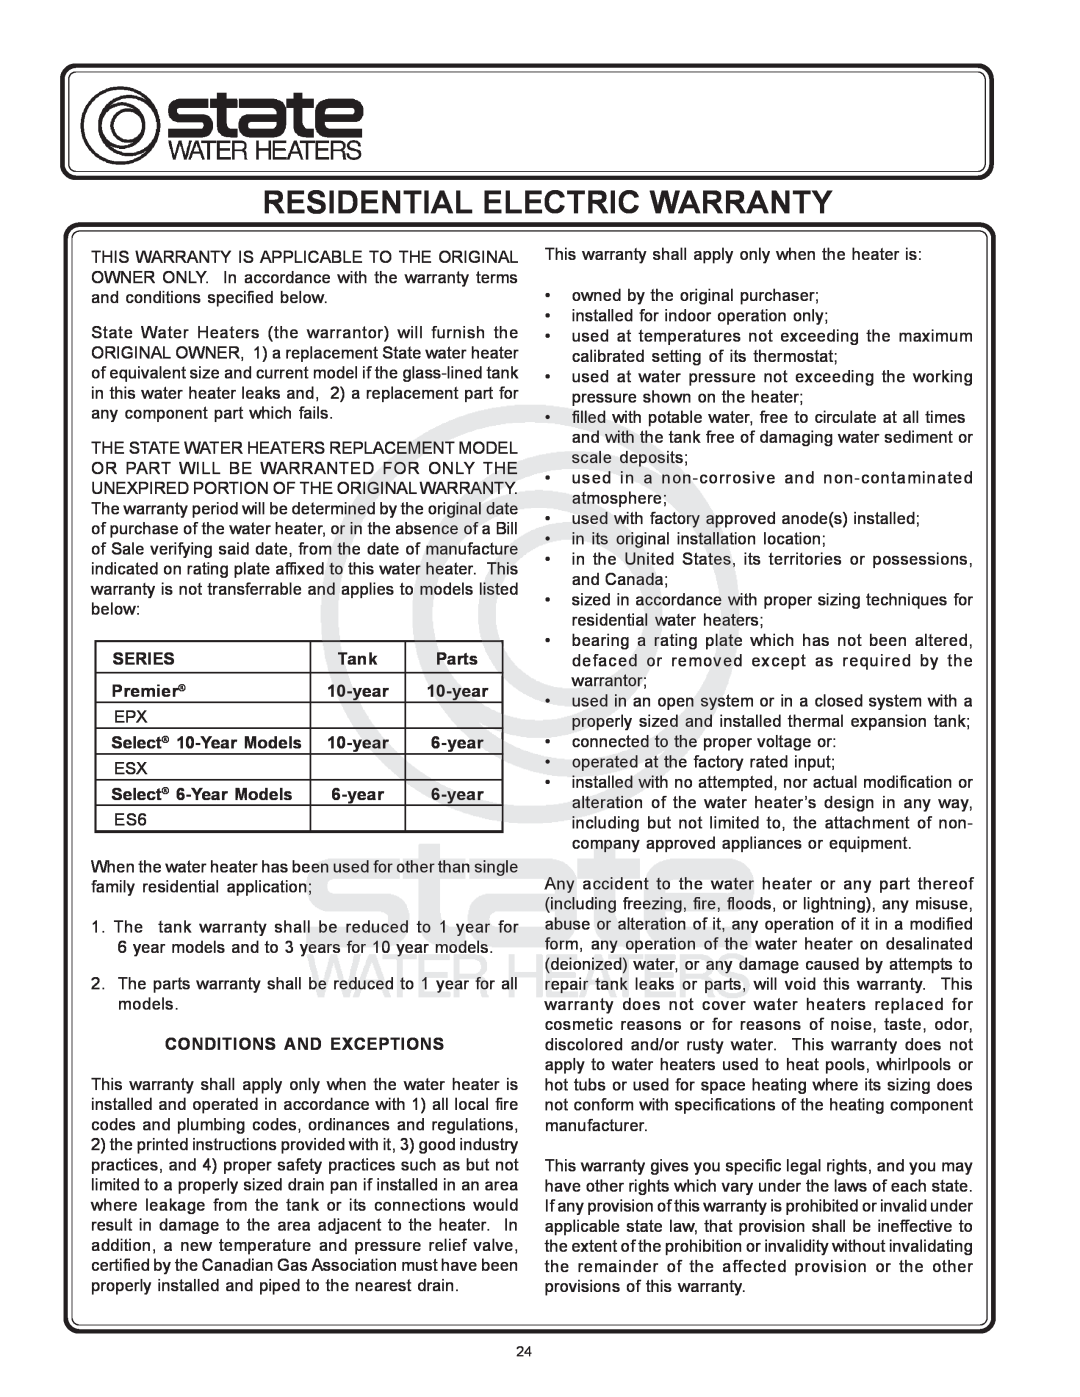 State Industries 184671-000 Rear warranty Residential Electric Warranty 